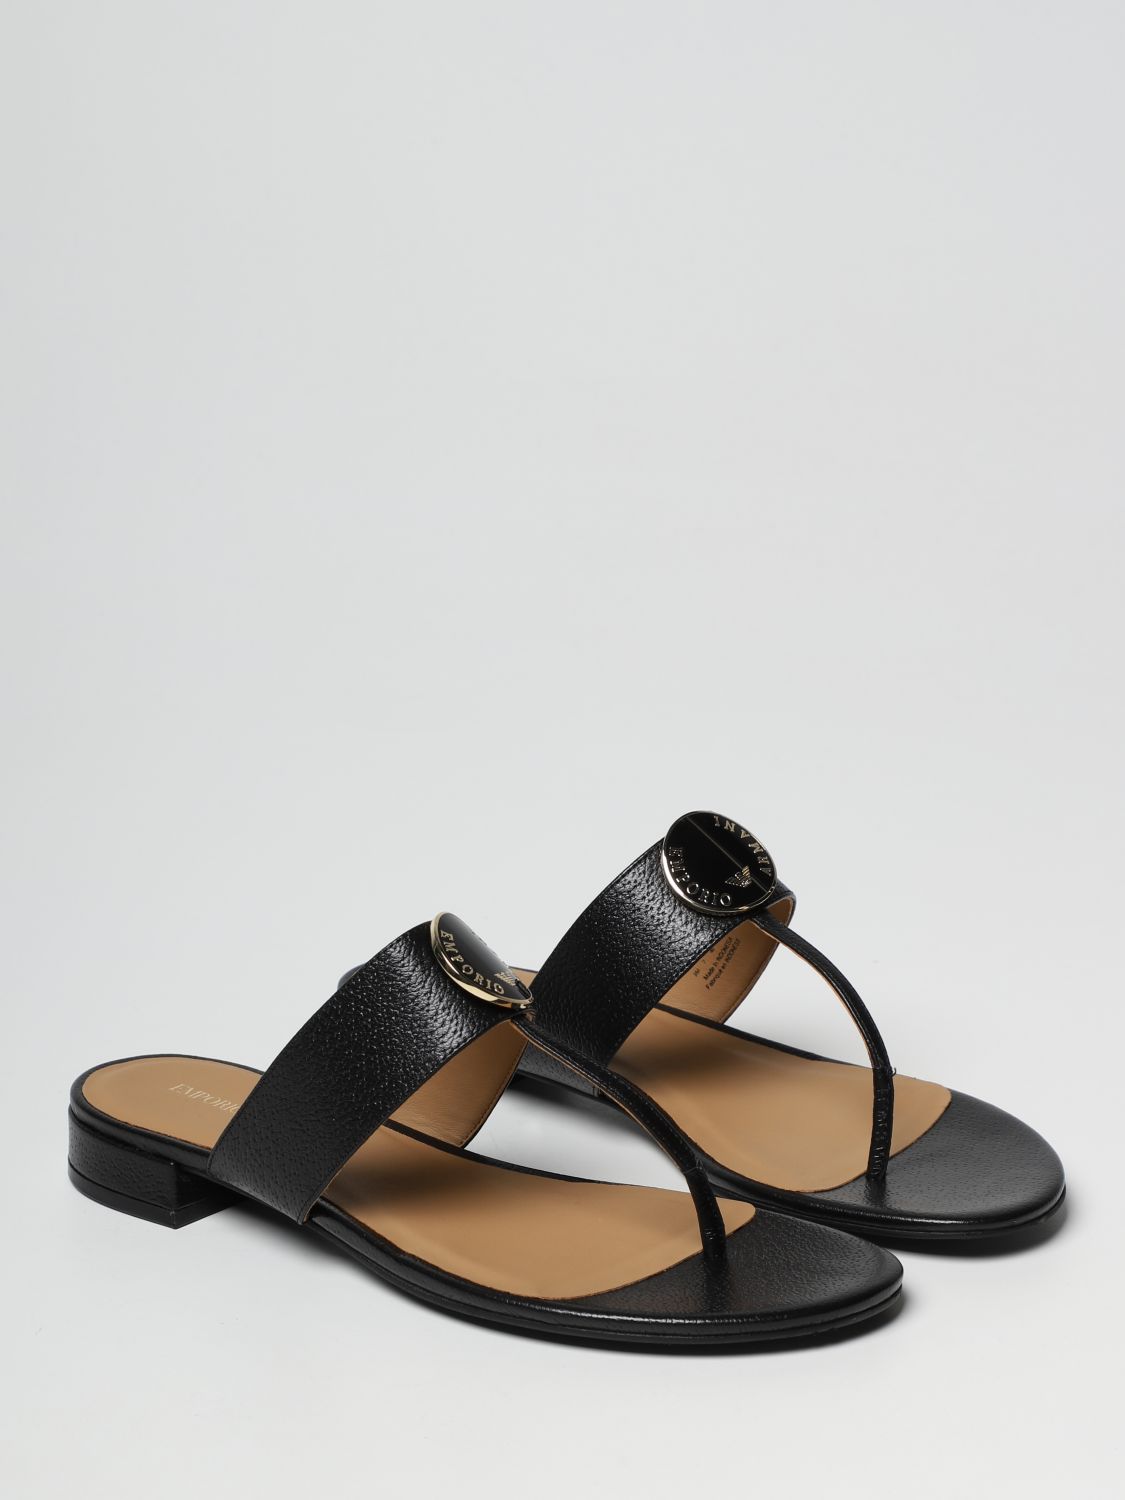 Sandalias planas Emporio Armani: Zapatos mujer Emporio Armani negro 2